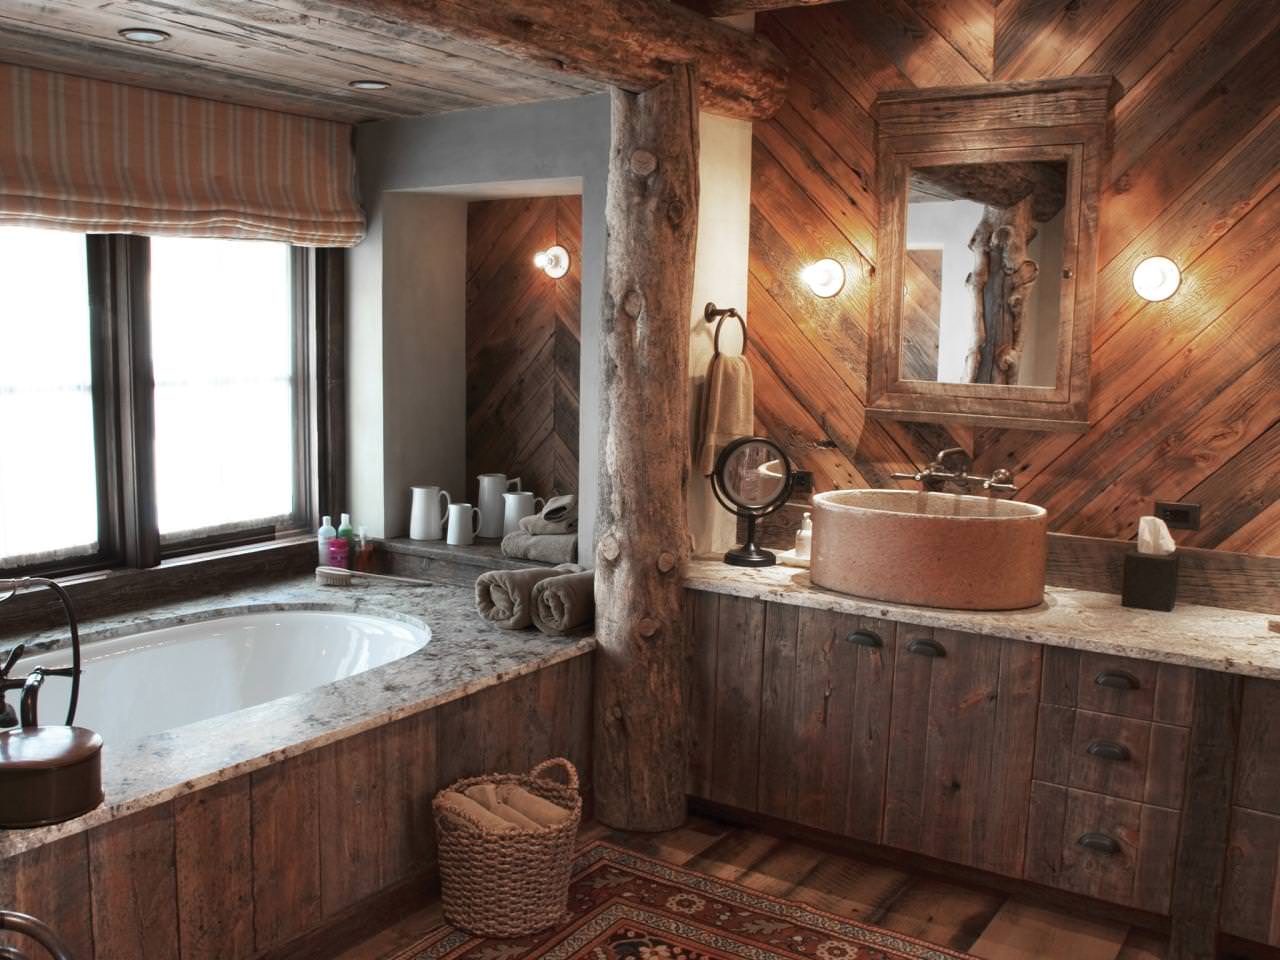 Kylpyhuoneen sisustus maalaistyylisessä puutalossa